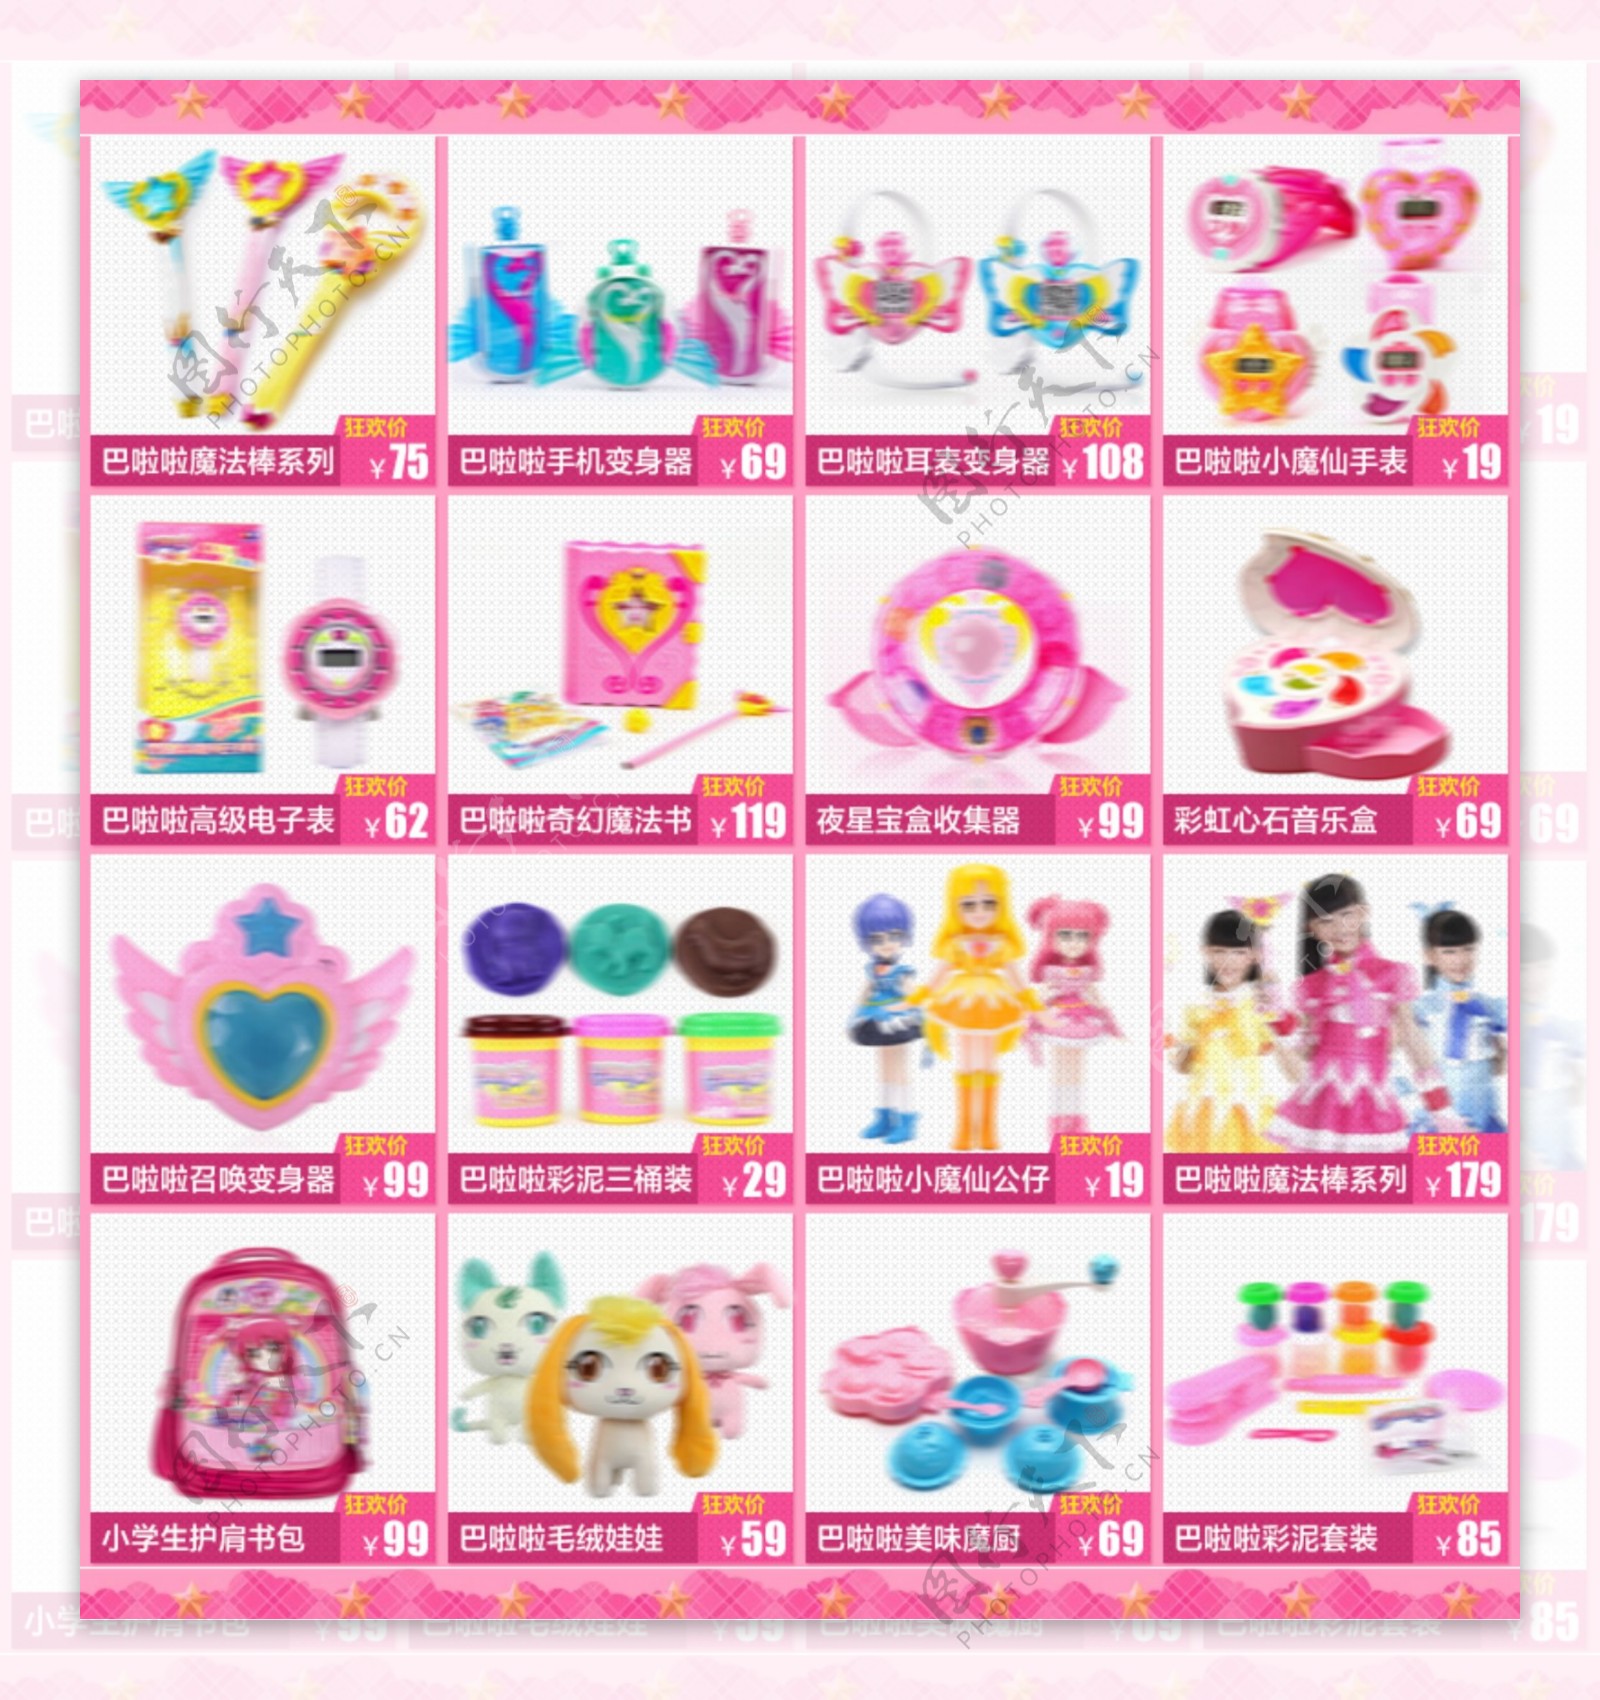 粉色可爱宝贝详情关联女孩玩具类关联促销